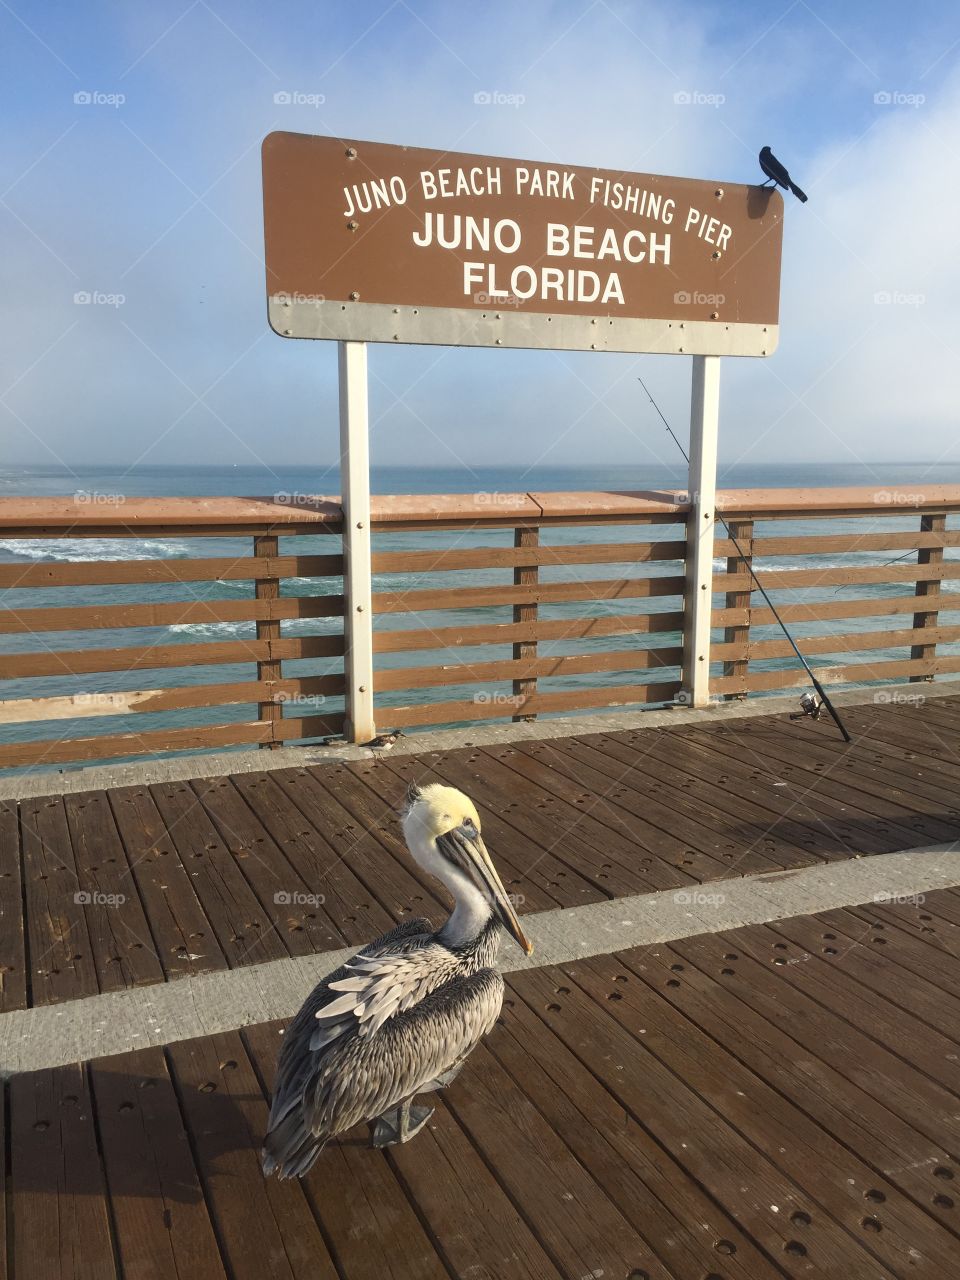 Pelican at the Juno Beach pier